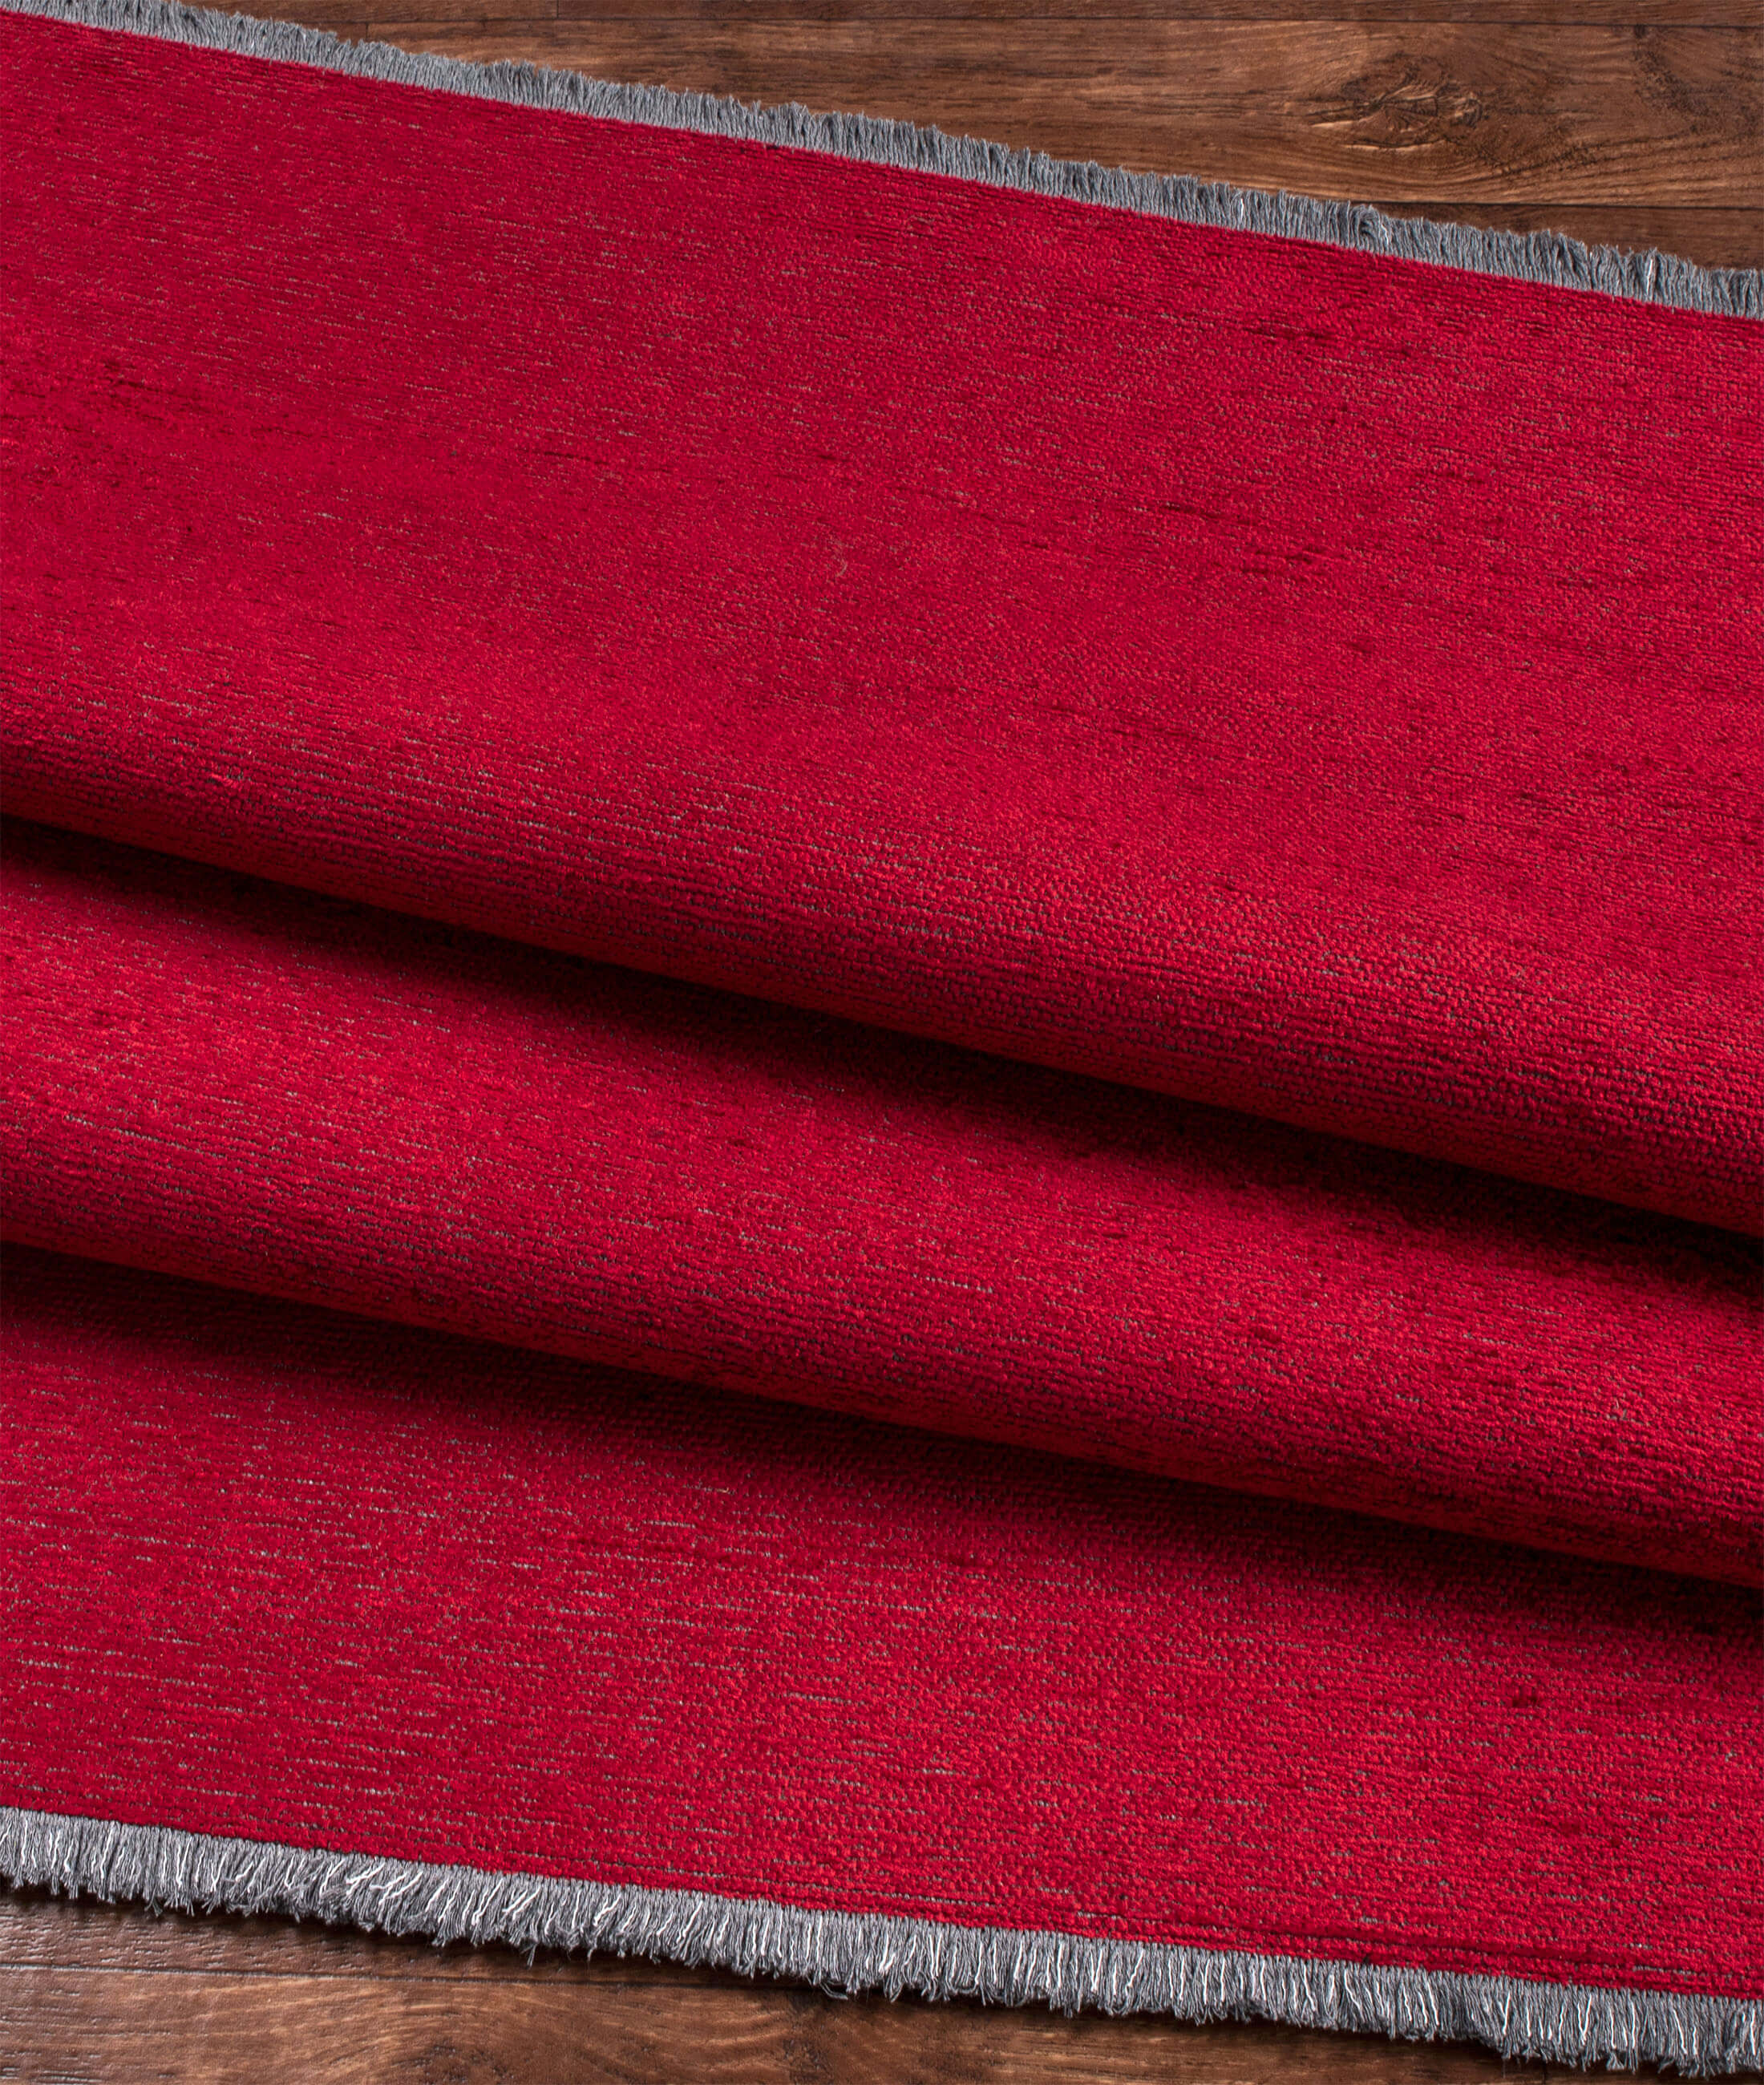 Toscana Red Carpet 24021A